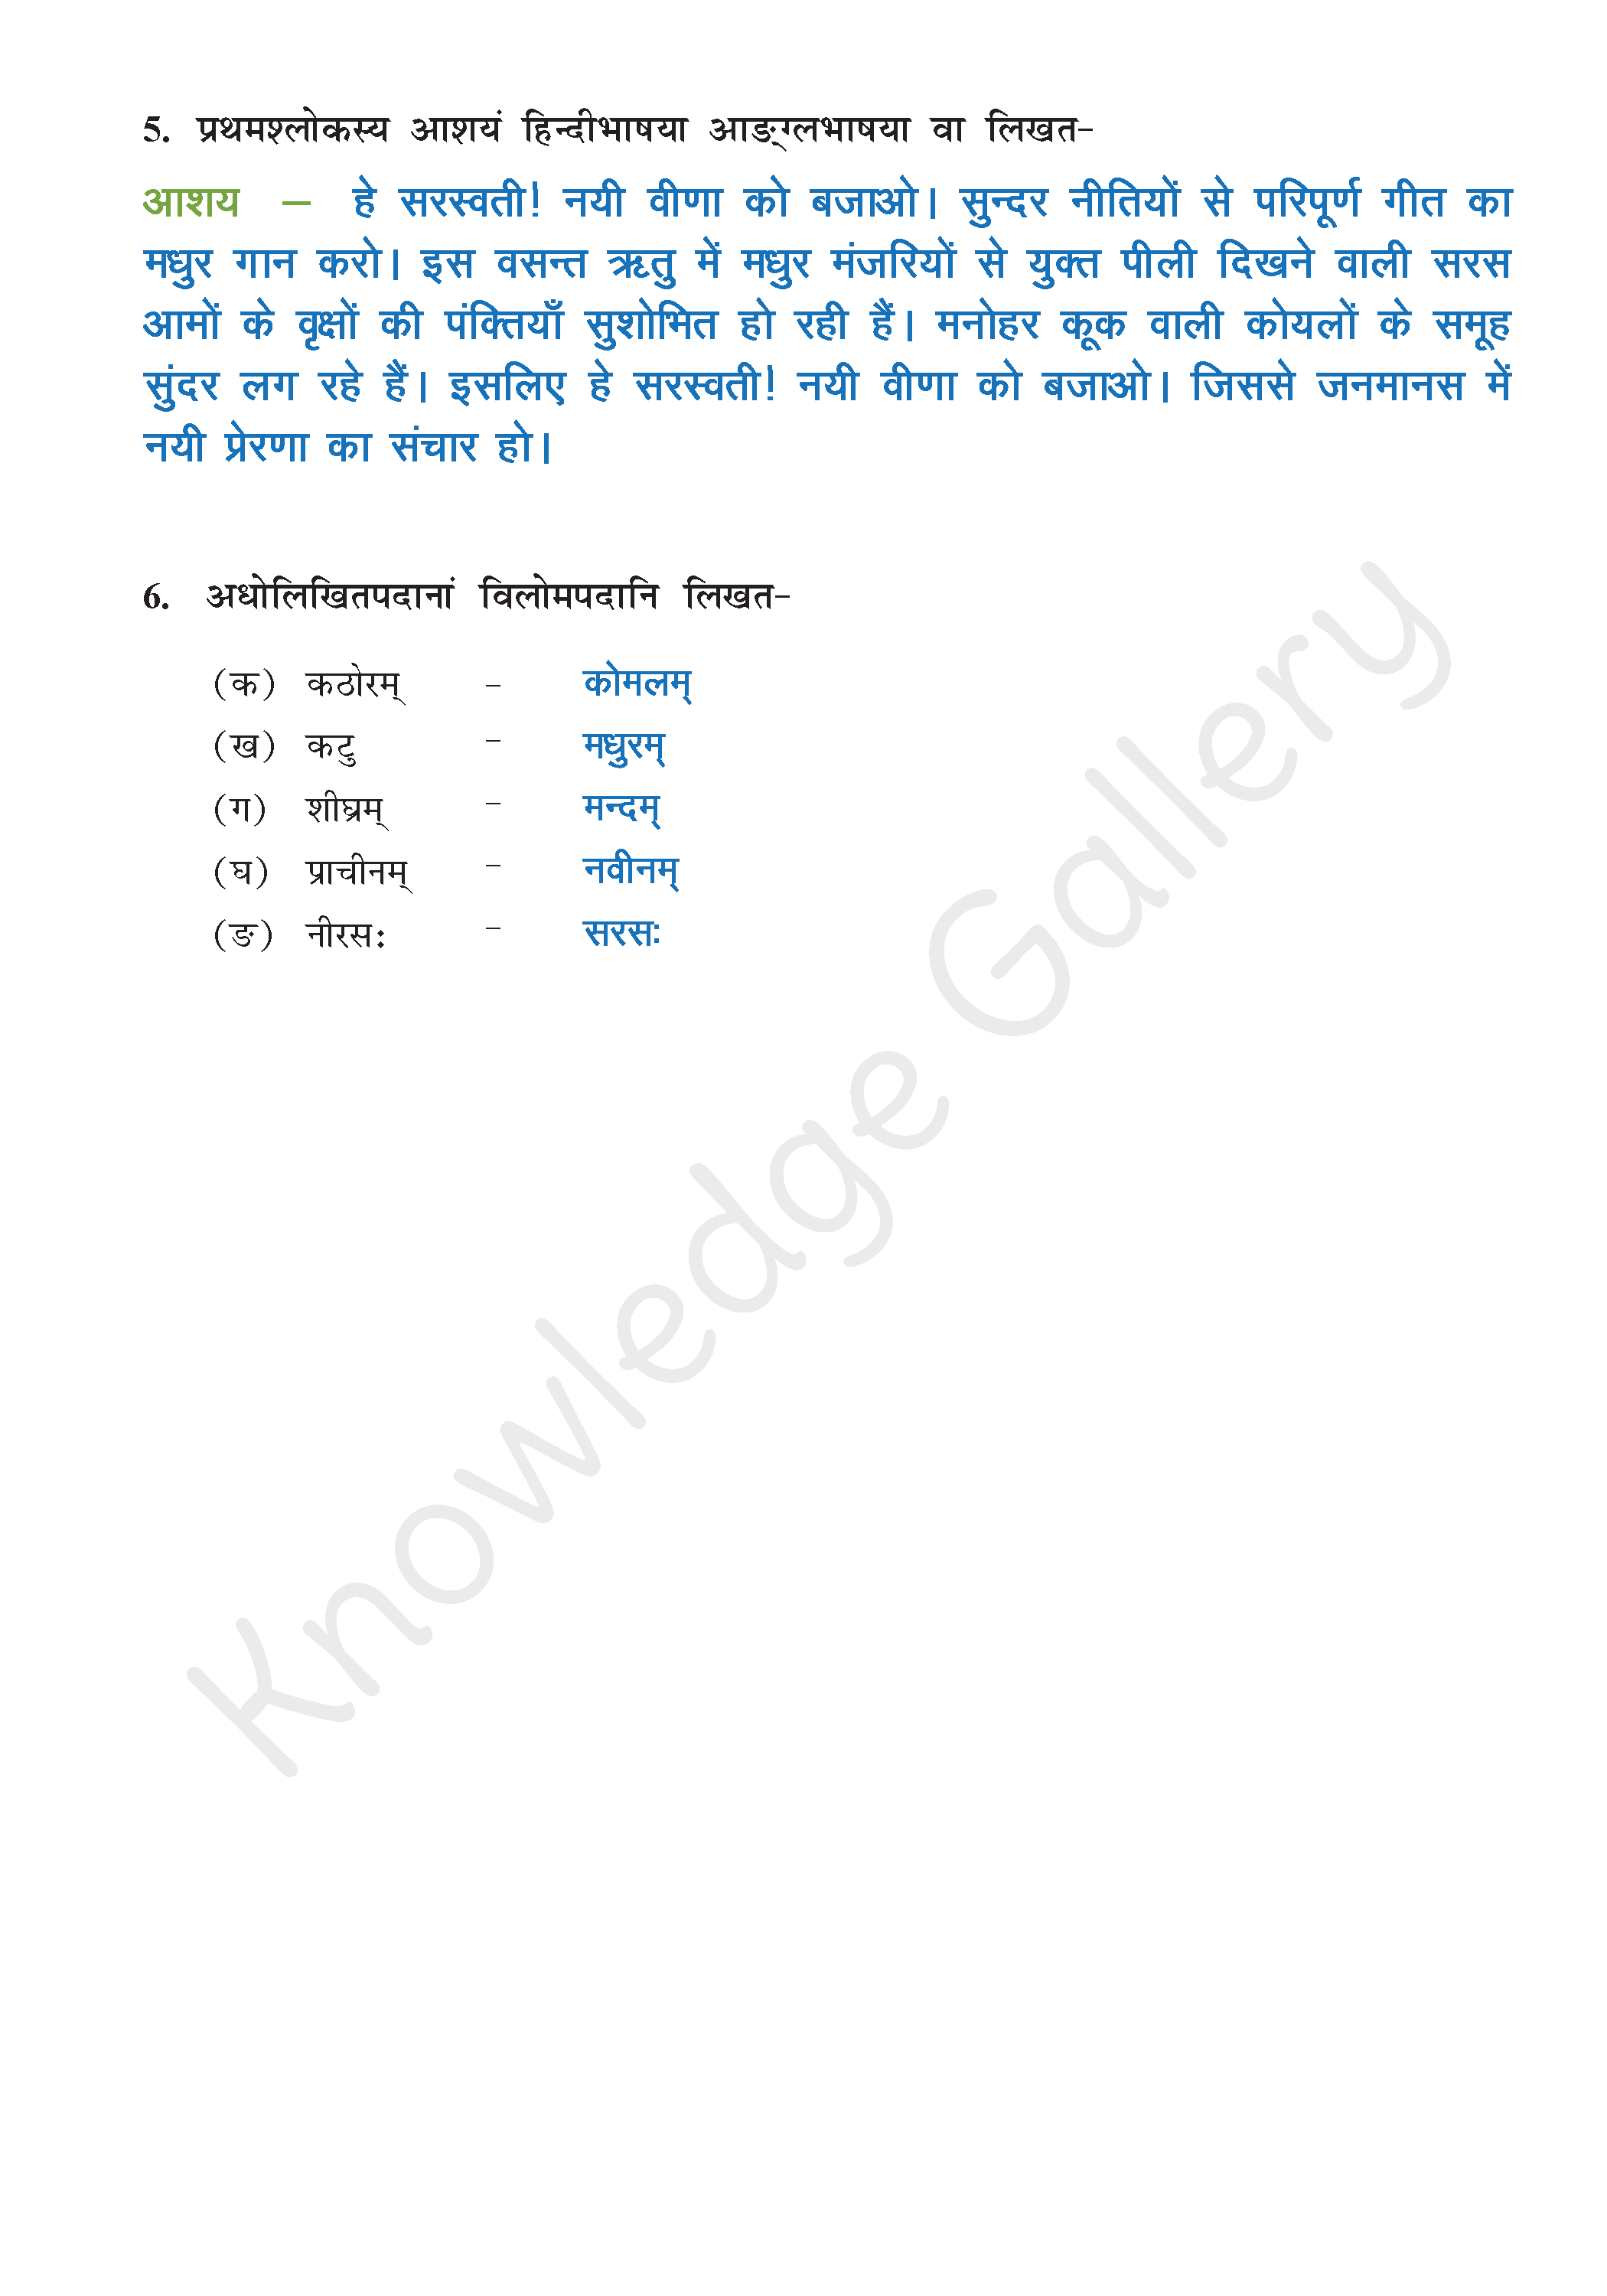 NCERT Solution For Class 9 Sanskrit Chapter 1 part 5